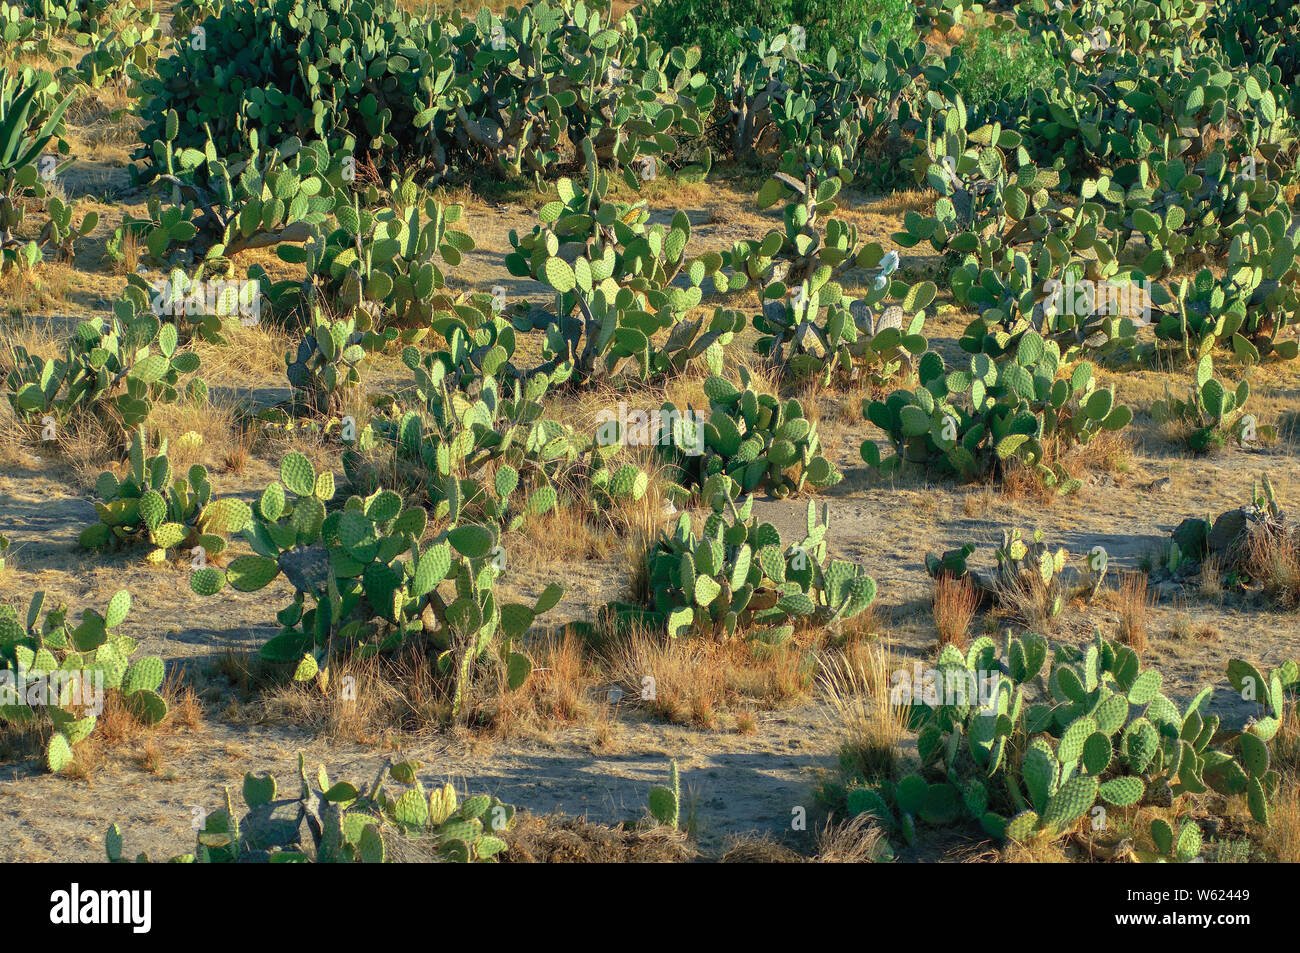 La tuna (opuntia) campo de cactus, nopal Foto de stock